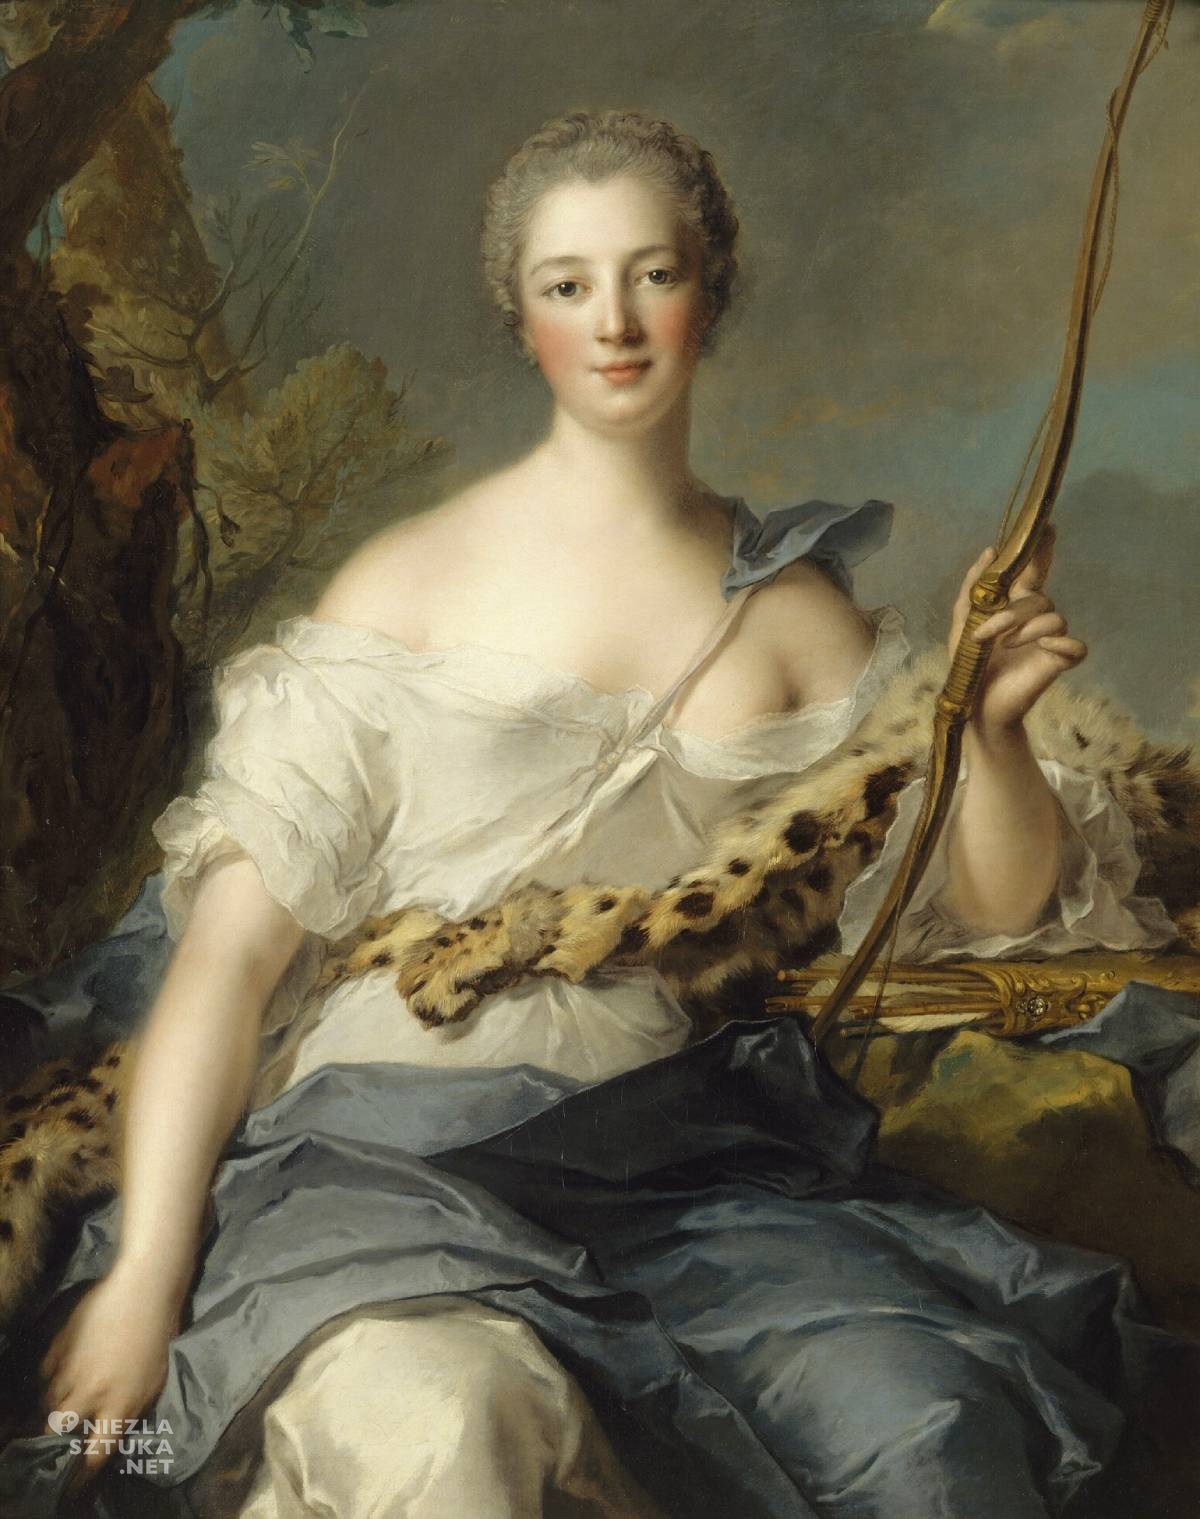 Jean-Marc Nattier, Jeanne-Antoinette Poisson, markiza de Pompadour jako Diana Łowczyni, Madame de Pompadour, porttret, portret kobiecy, kobiety w sztuce, niezła sztuka